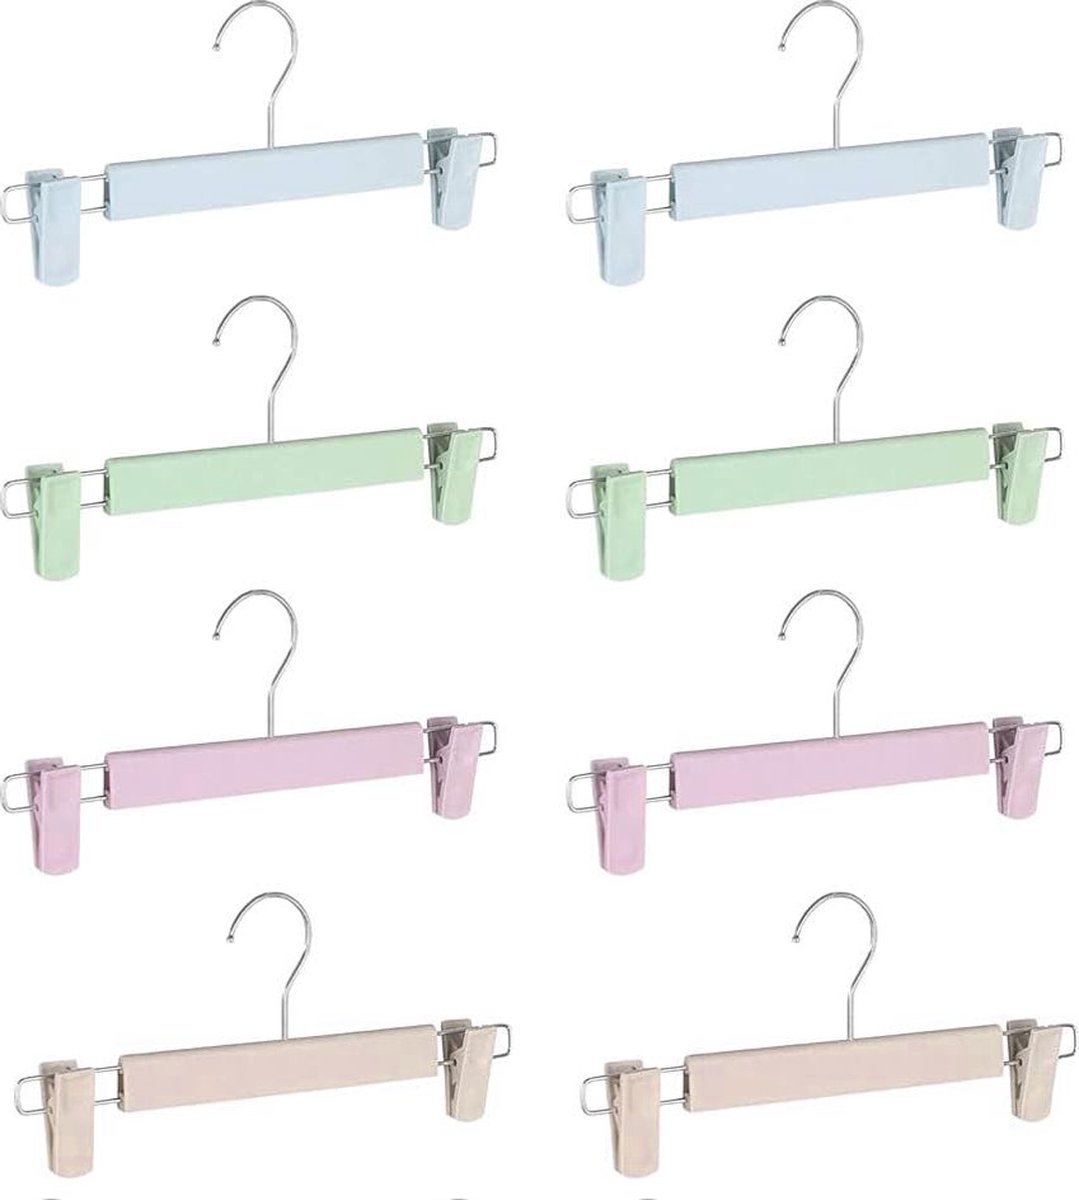 8 Stuks - Verstelbare Broek- en Rokhangers - Sterke Kunststof - Ideaal voor Kledingkast Organisatie - Kreukvrij en Duurzaam Design - Set van 8 in Roze, Blauw, Groen, Kaki